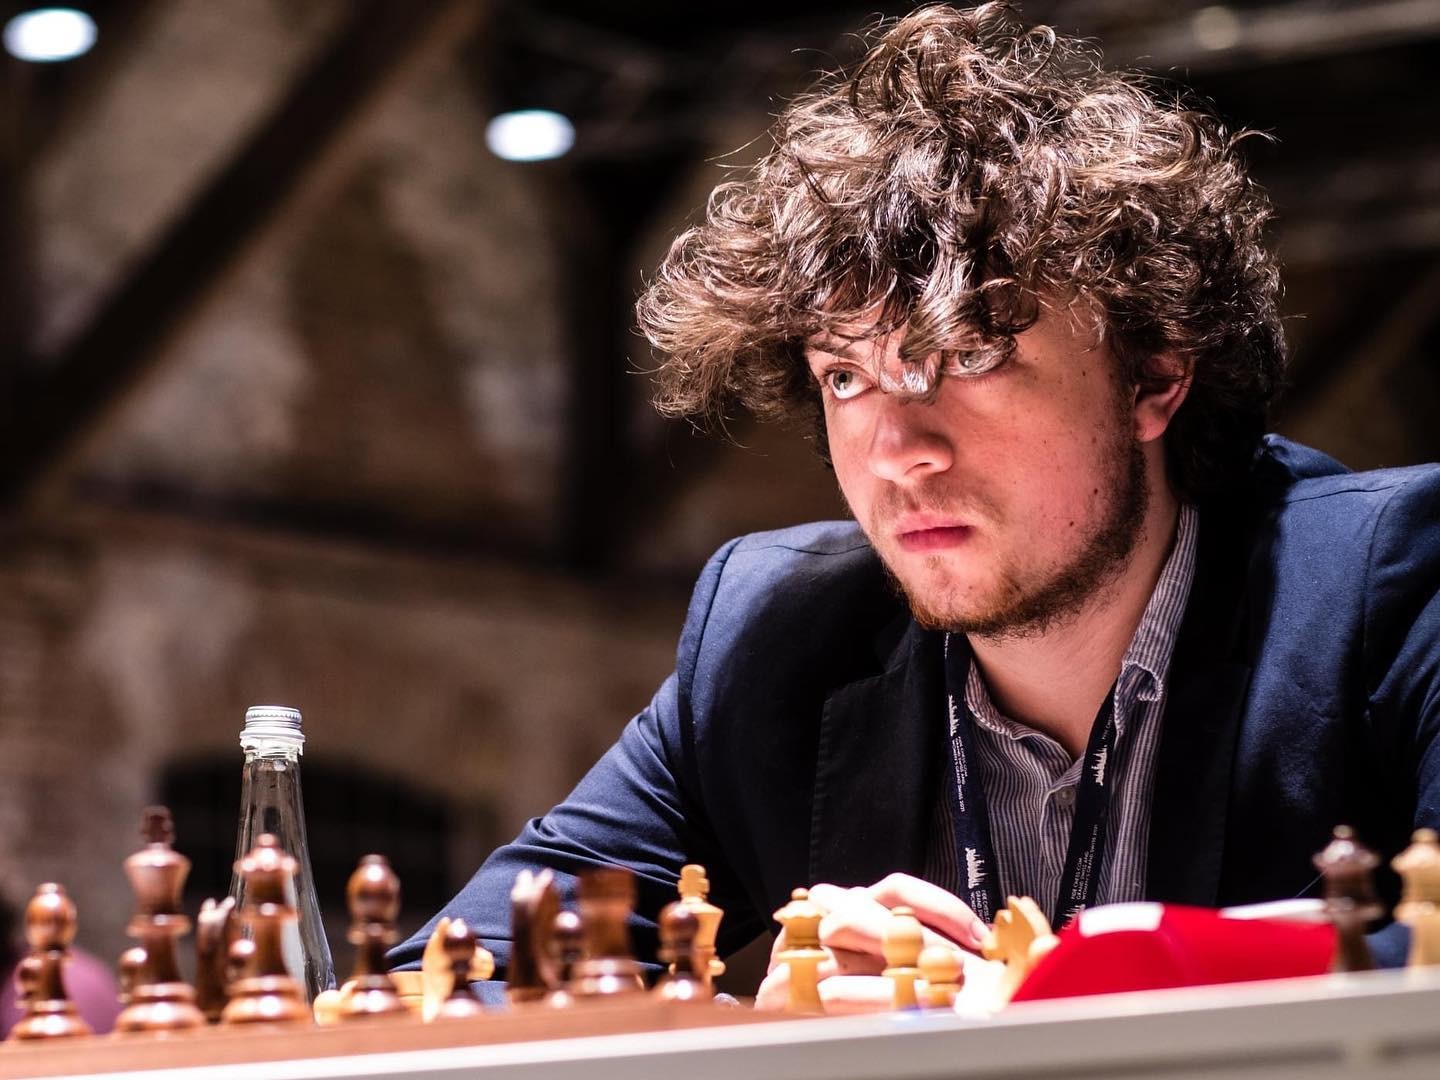 Campeão mundial de xadrez alega que rival trapaceou mais do que admite